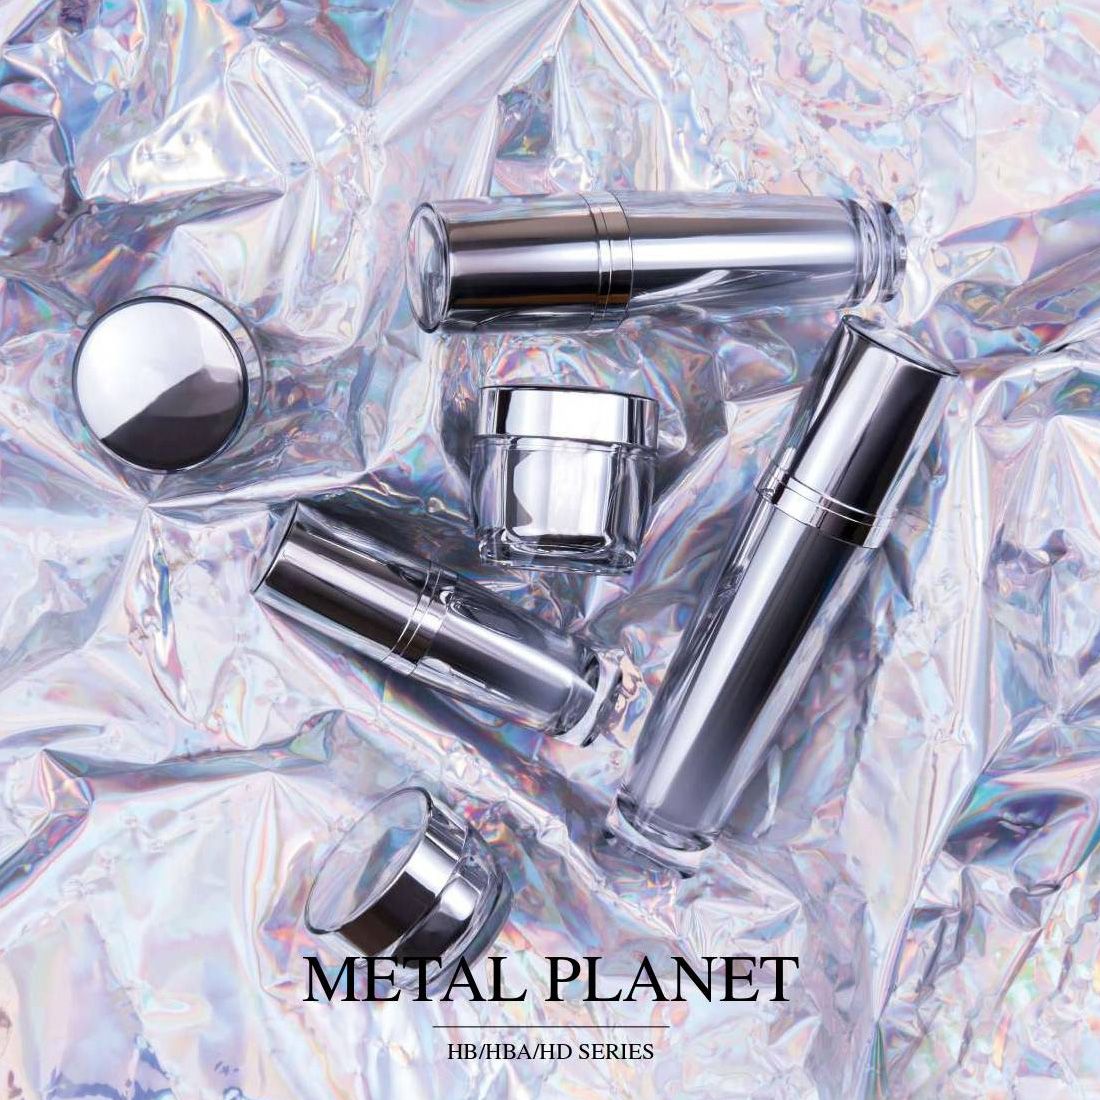 Metal Planet (embalagem acrílica luxuosa para cosméticos e cuidados com a pele) Série HB/HBA/HD